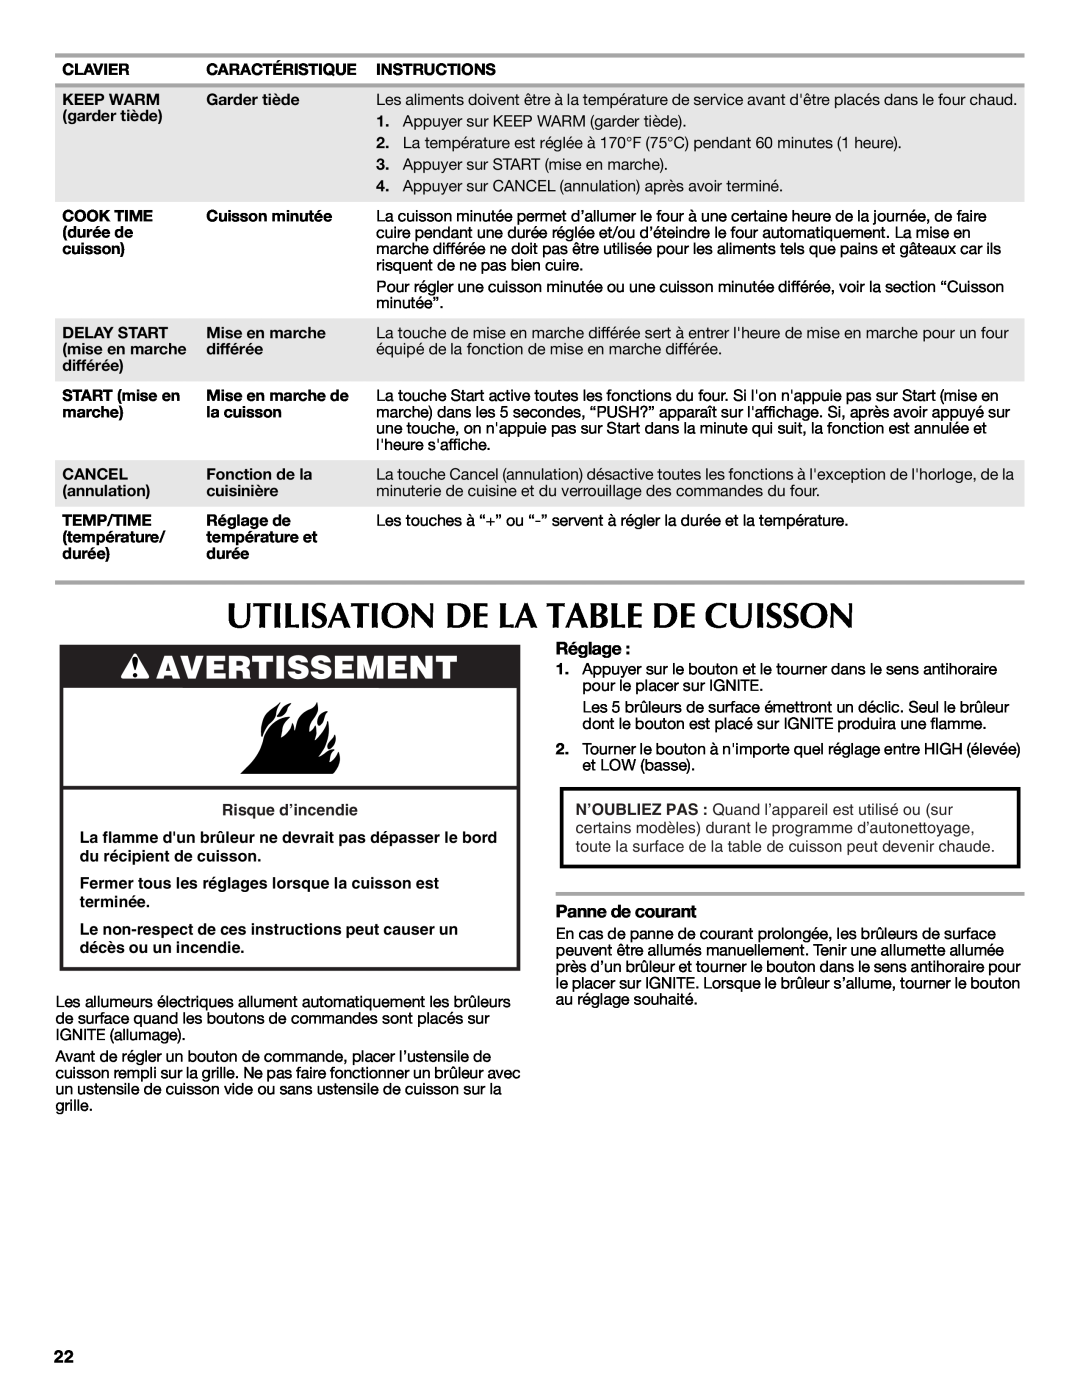 Maytag W10249696A warranty Utilisation De La Table De Cuisson, Avertissement, Réglage, Panne de courant, Risque d’incendie 